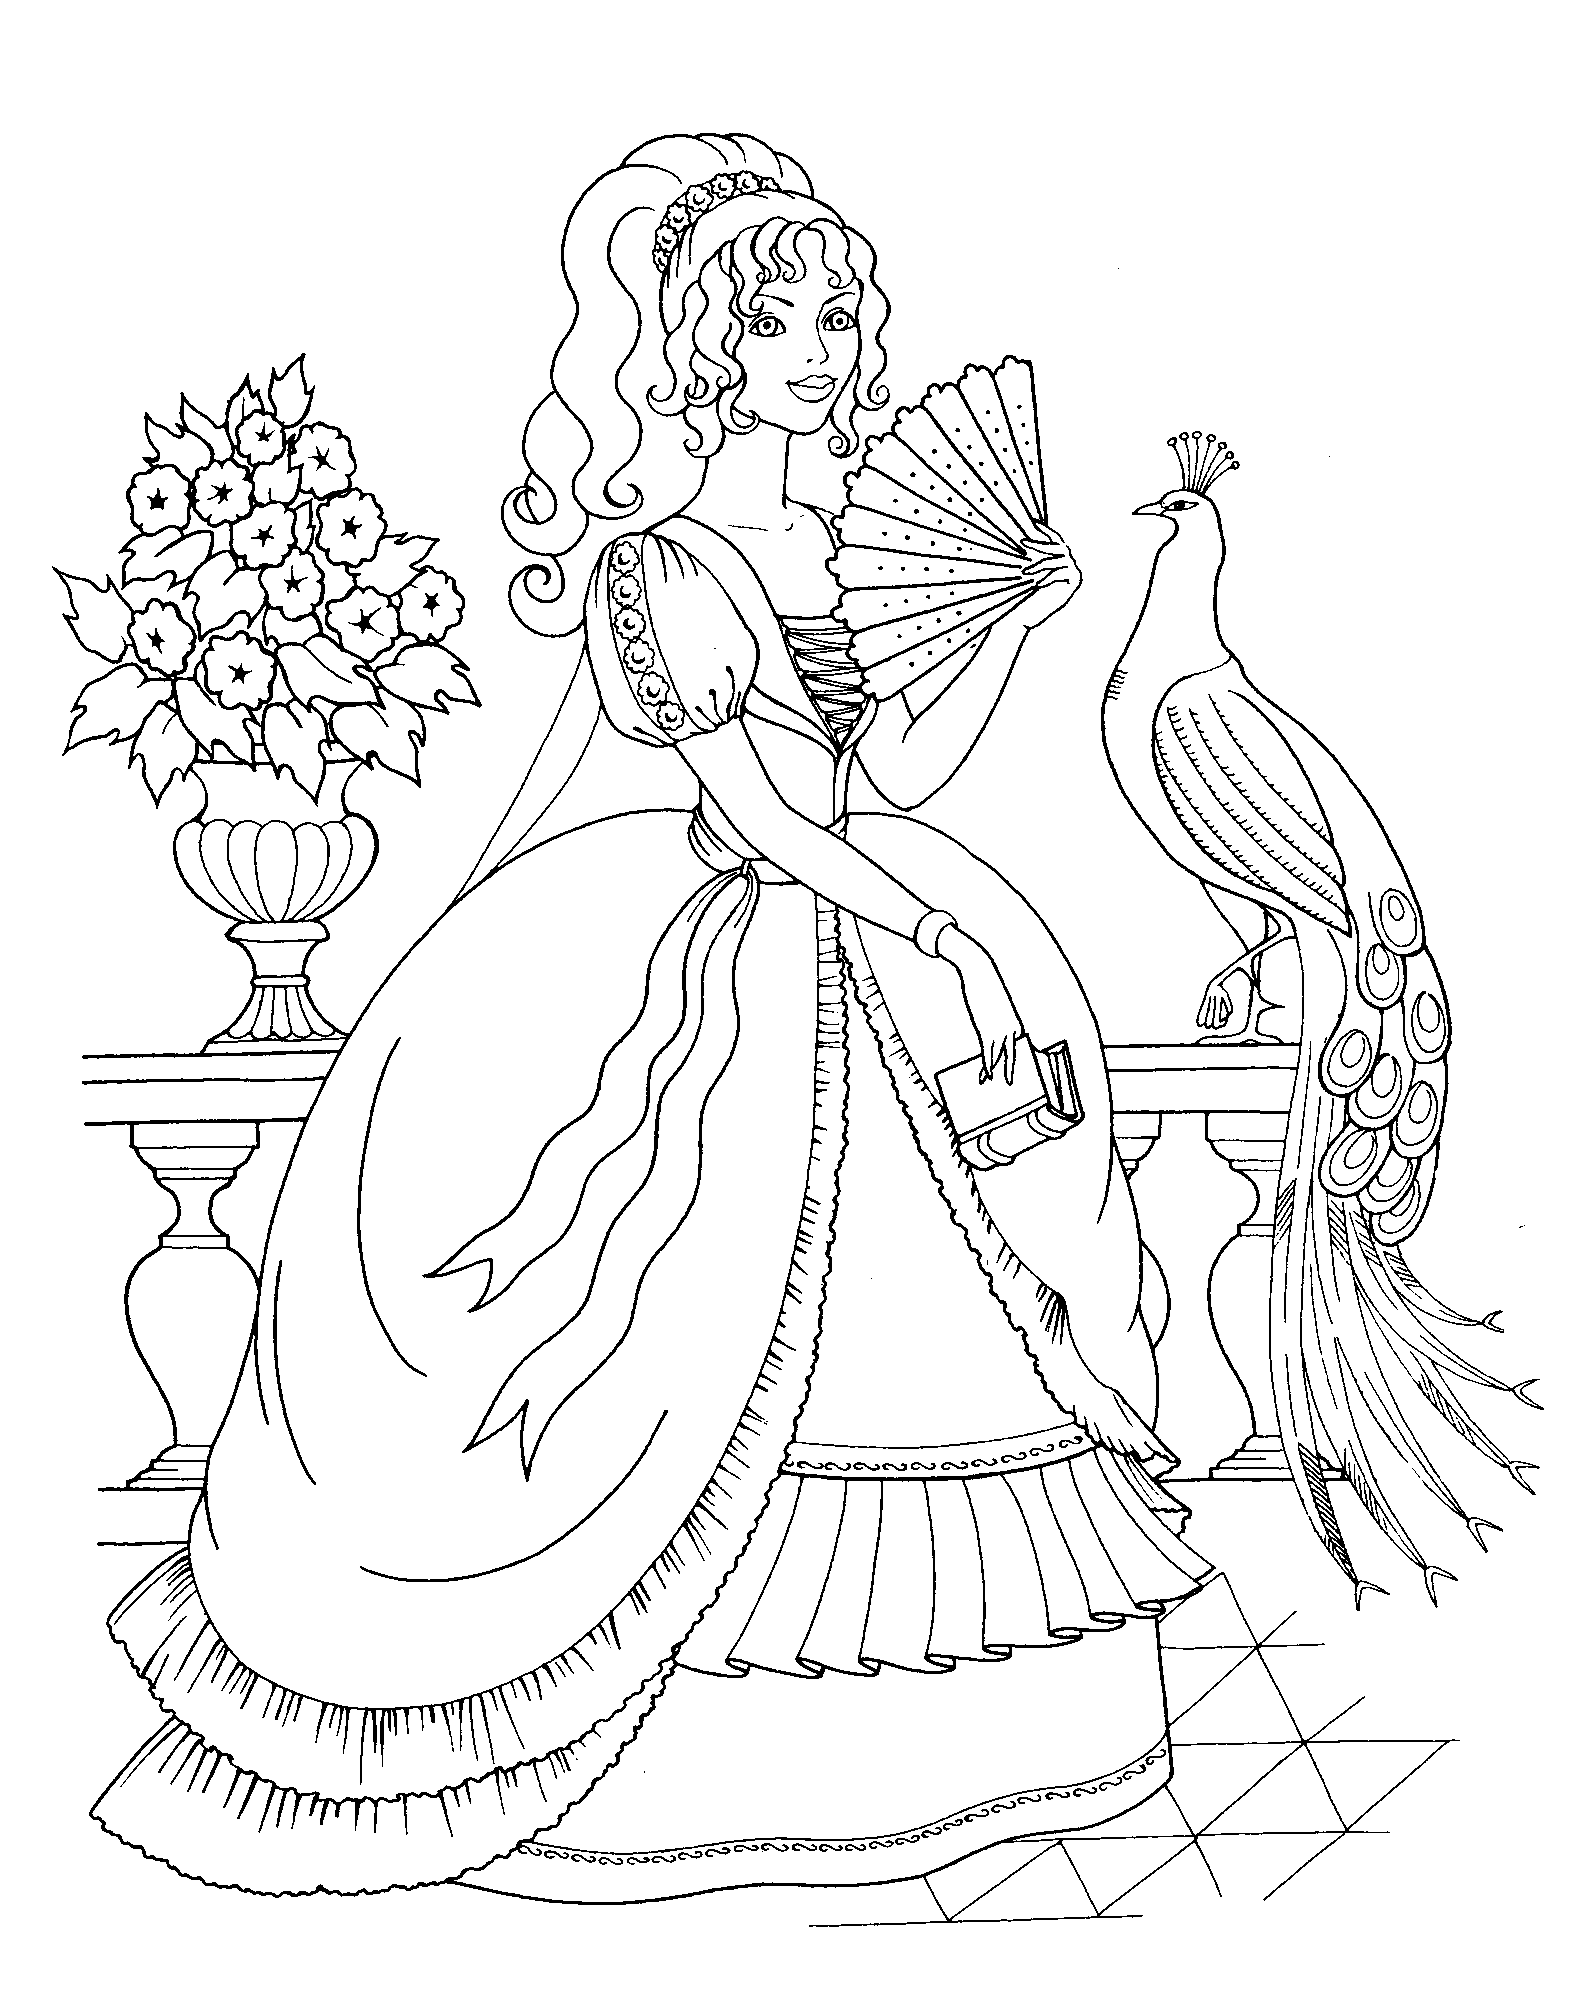 Tranh tô màu công chúa đẹp (126)